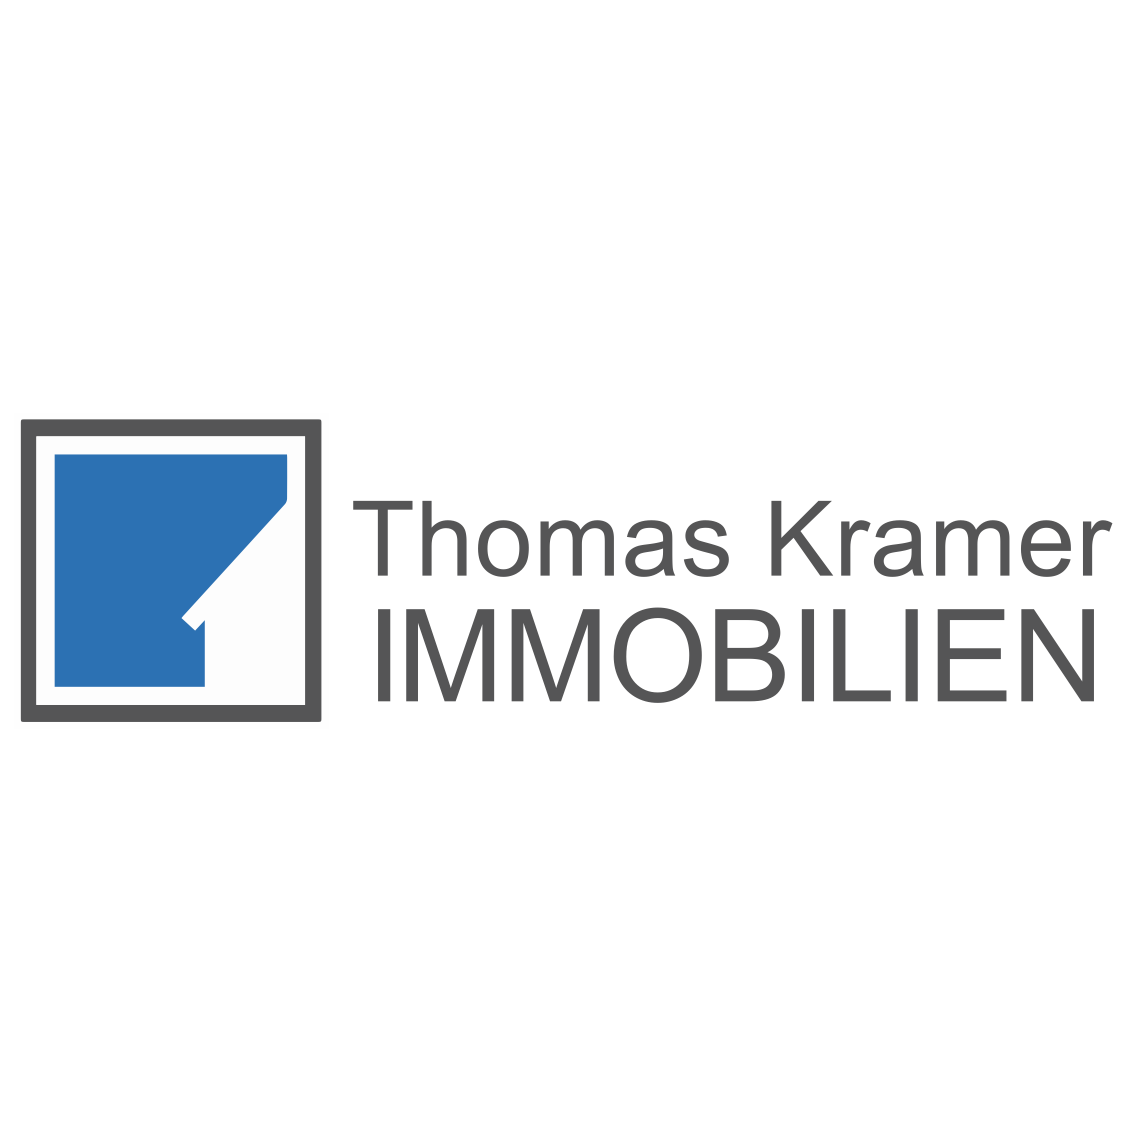 Thomas Kramer IMMOBILIEN in Wuppertal - Logo